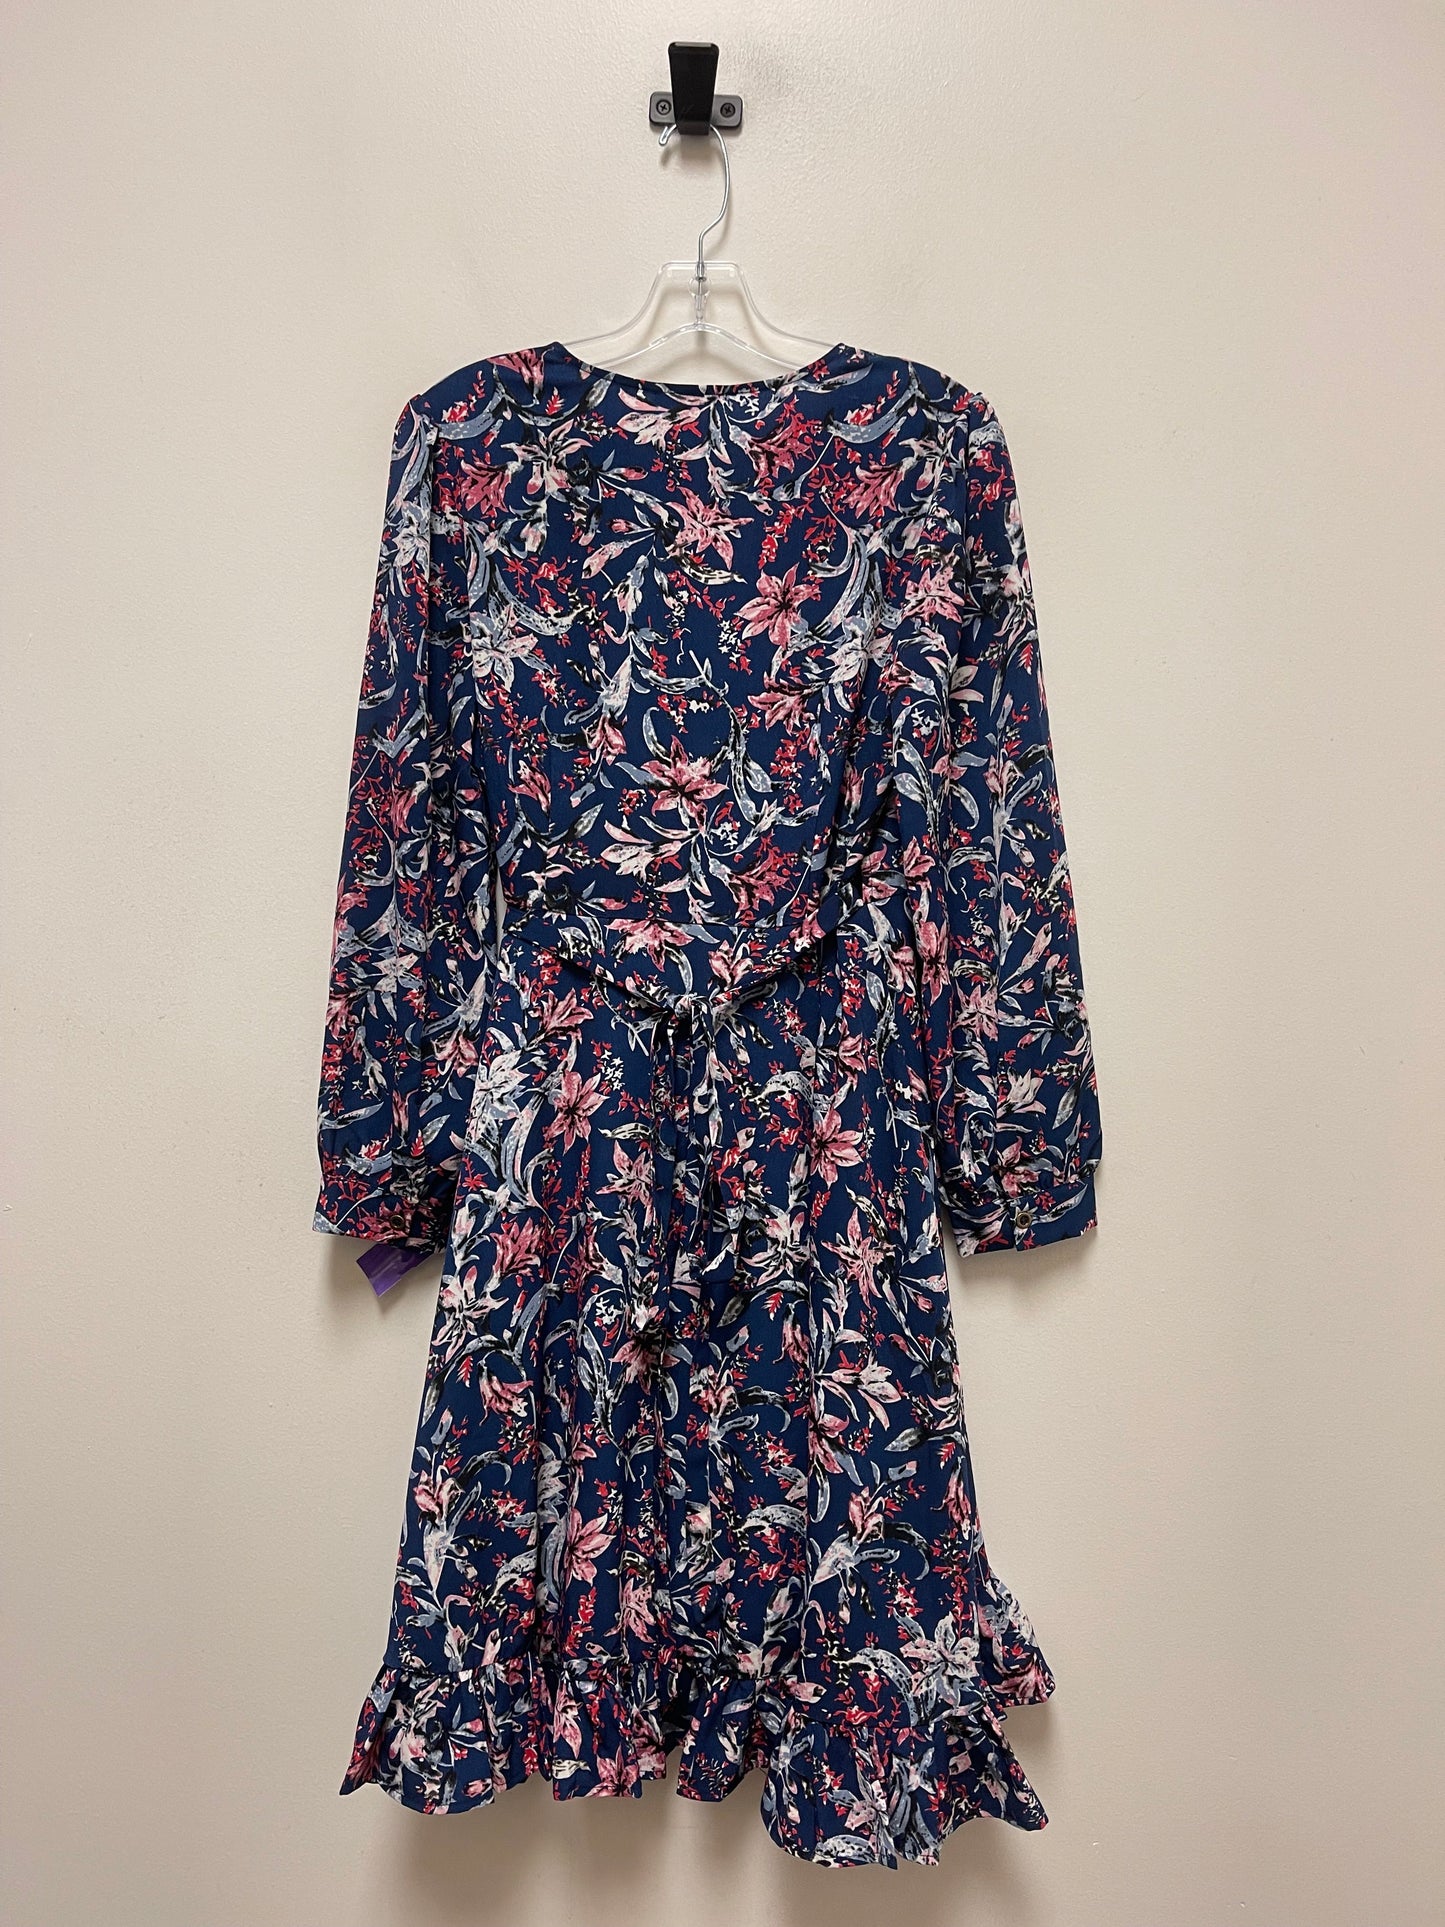 Dress Casual Midi By Jodifl  Size: S